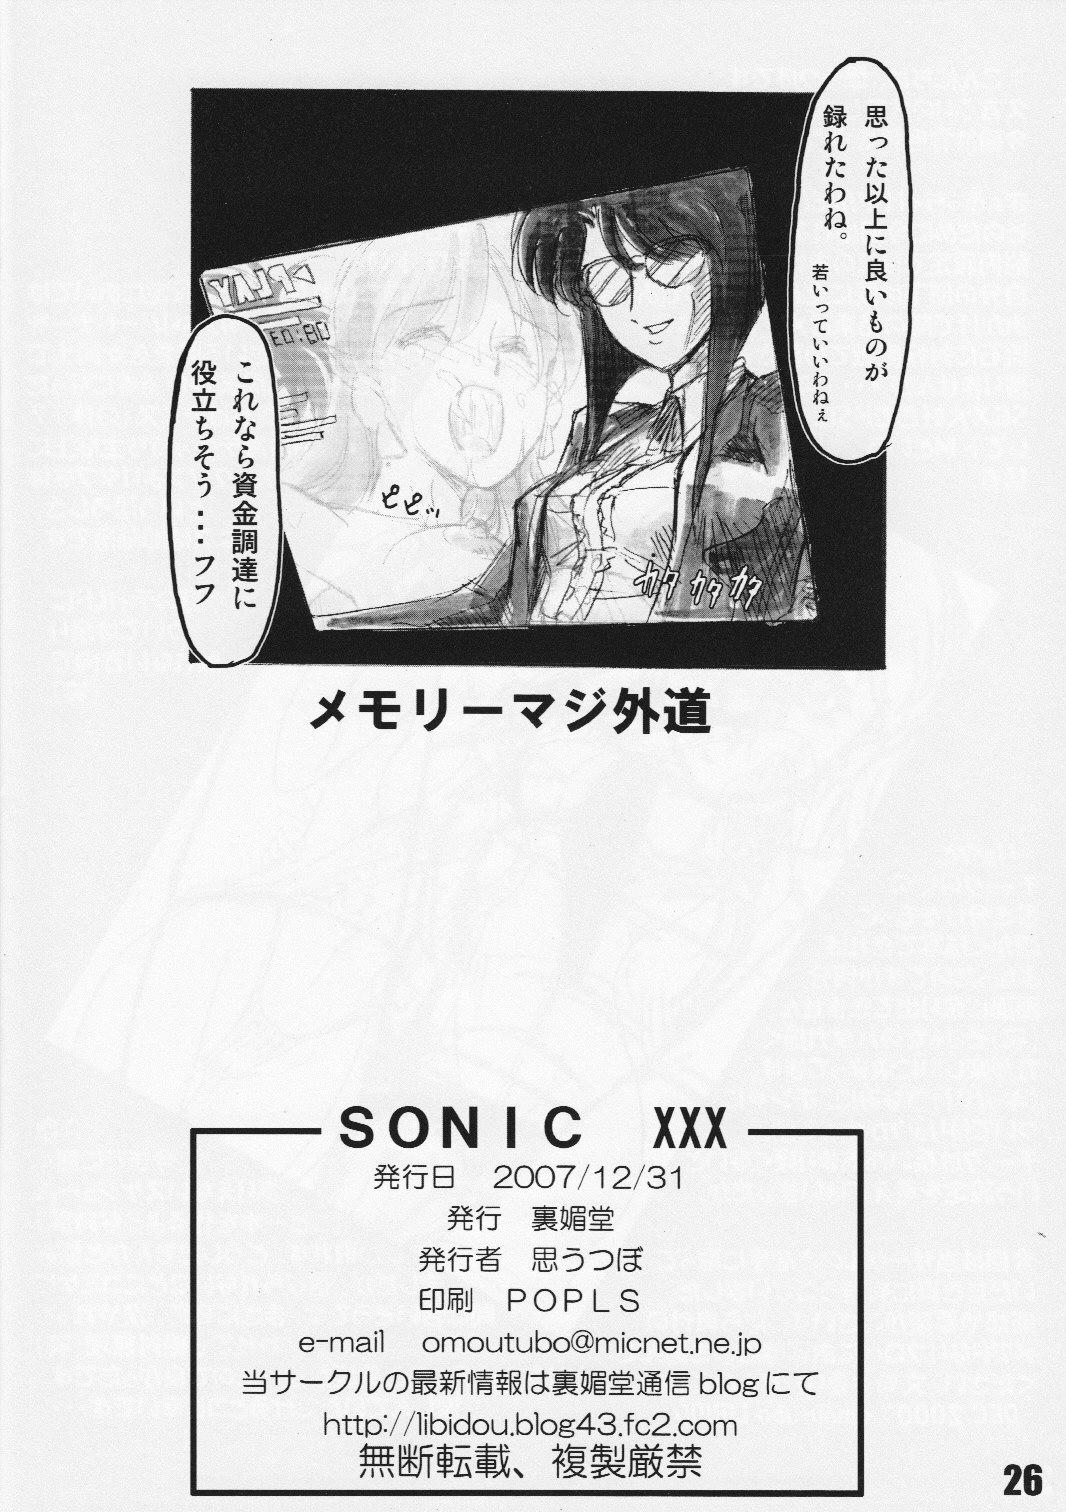 Xxx SONICxxx - Sonic soldier borgman Butthole - Page 25